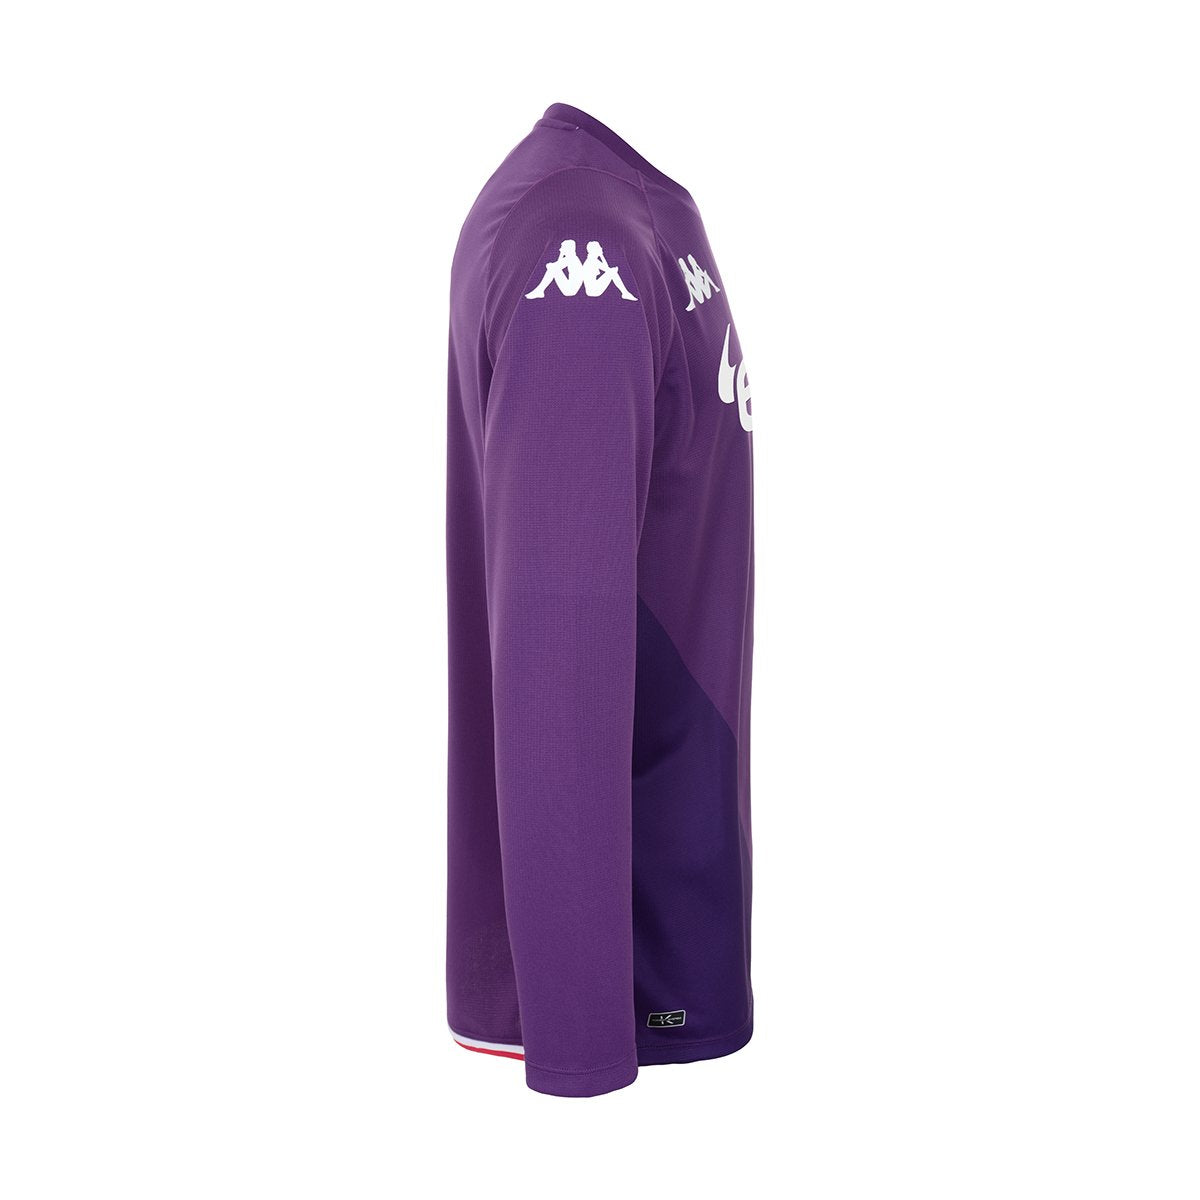 Camiseta Kombat Goalkeeper AS Monaco niño Púrpura - Imagen 2